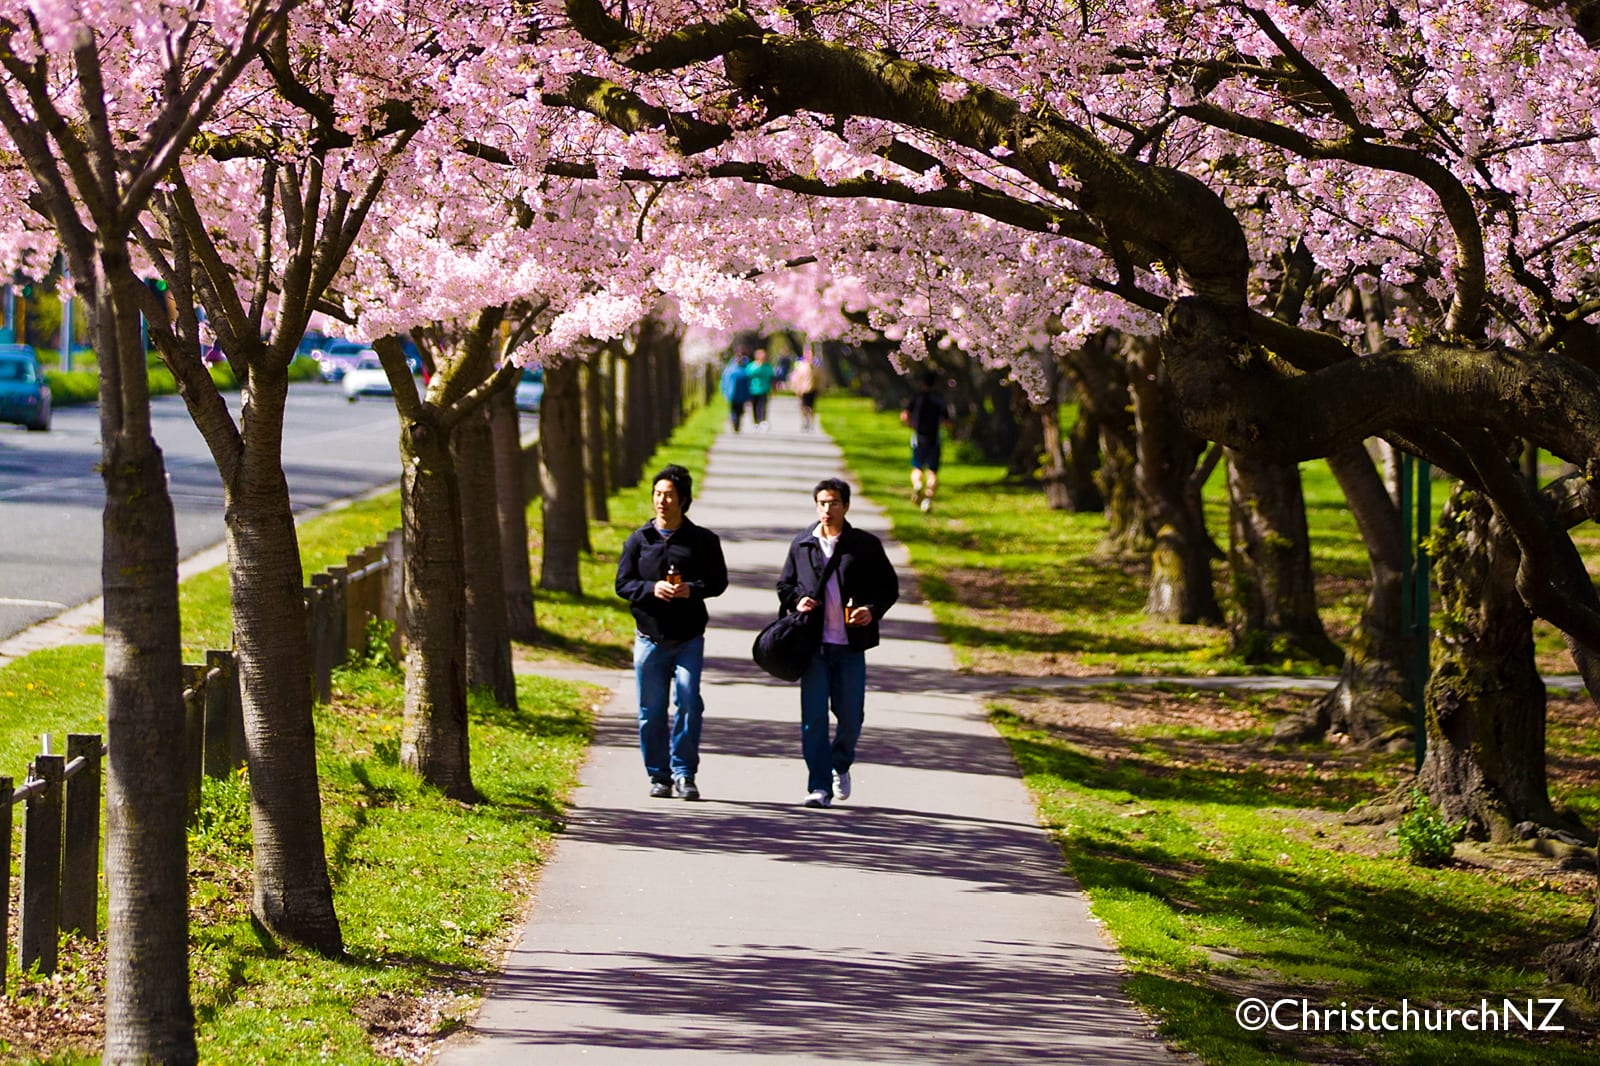 Walkway under long rows of pink flowering trees in Christchurch